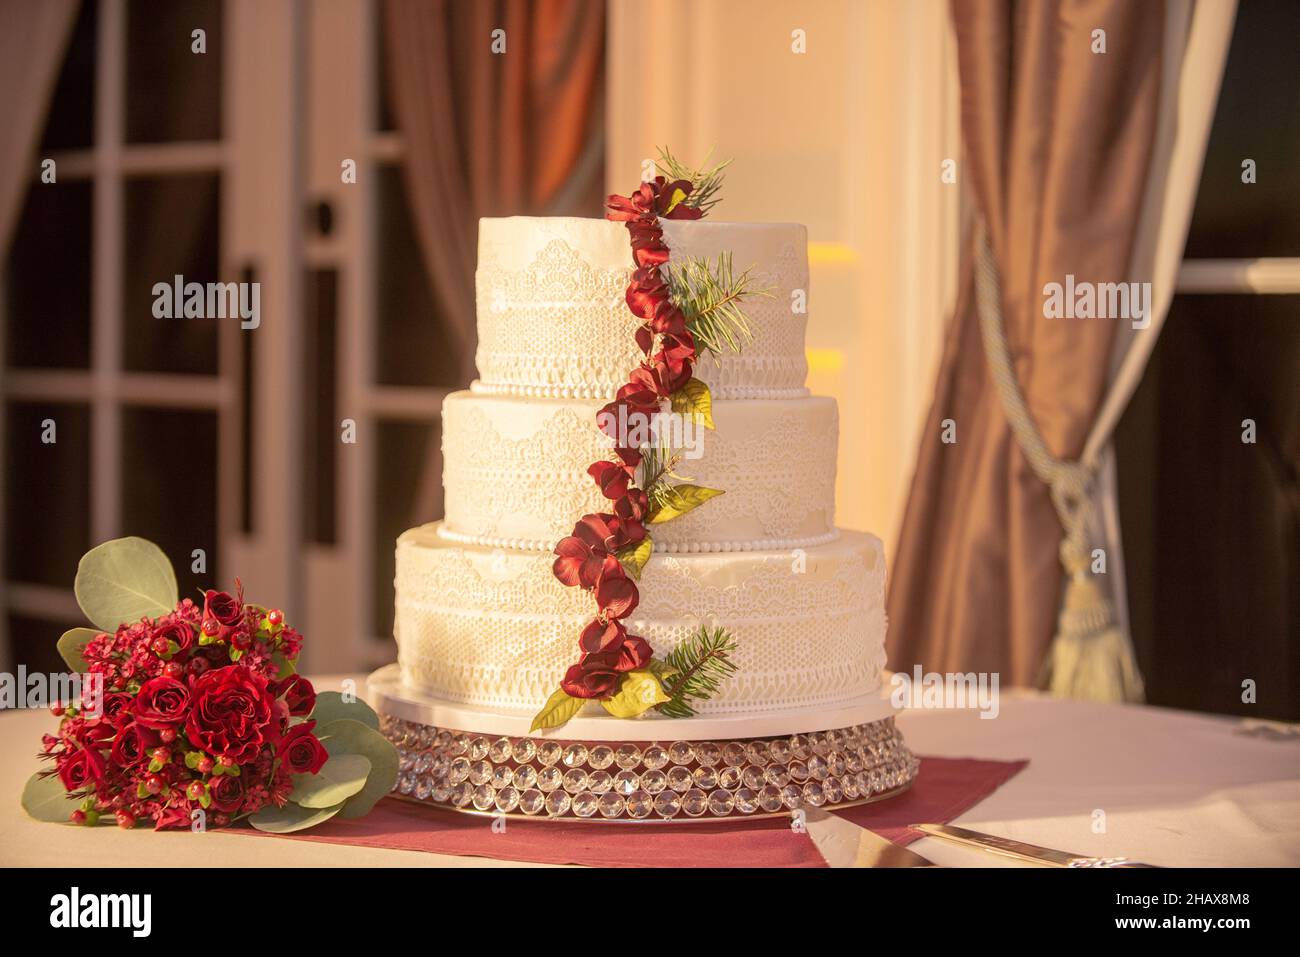 Wunderschöne dreistufige weiße Hochzeitstorte mit roten Blumen Dekoration beim Hochzeitsempfang Stockfoto